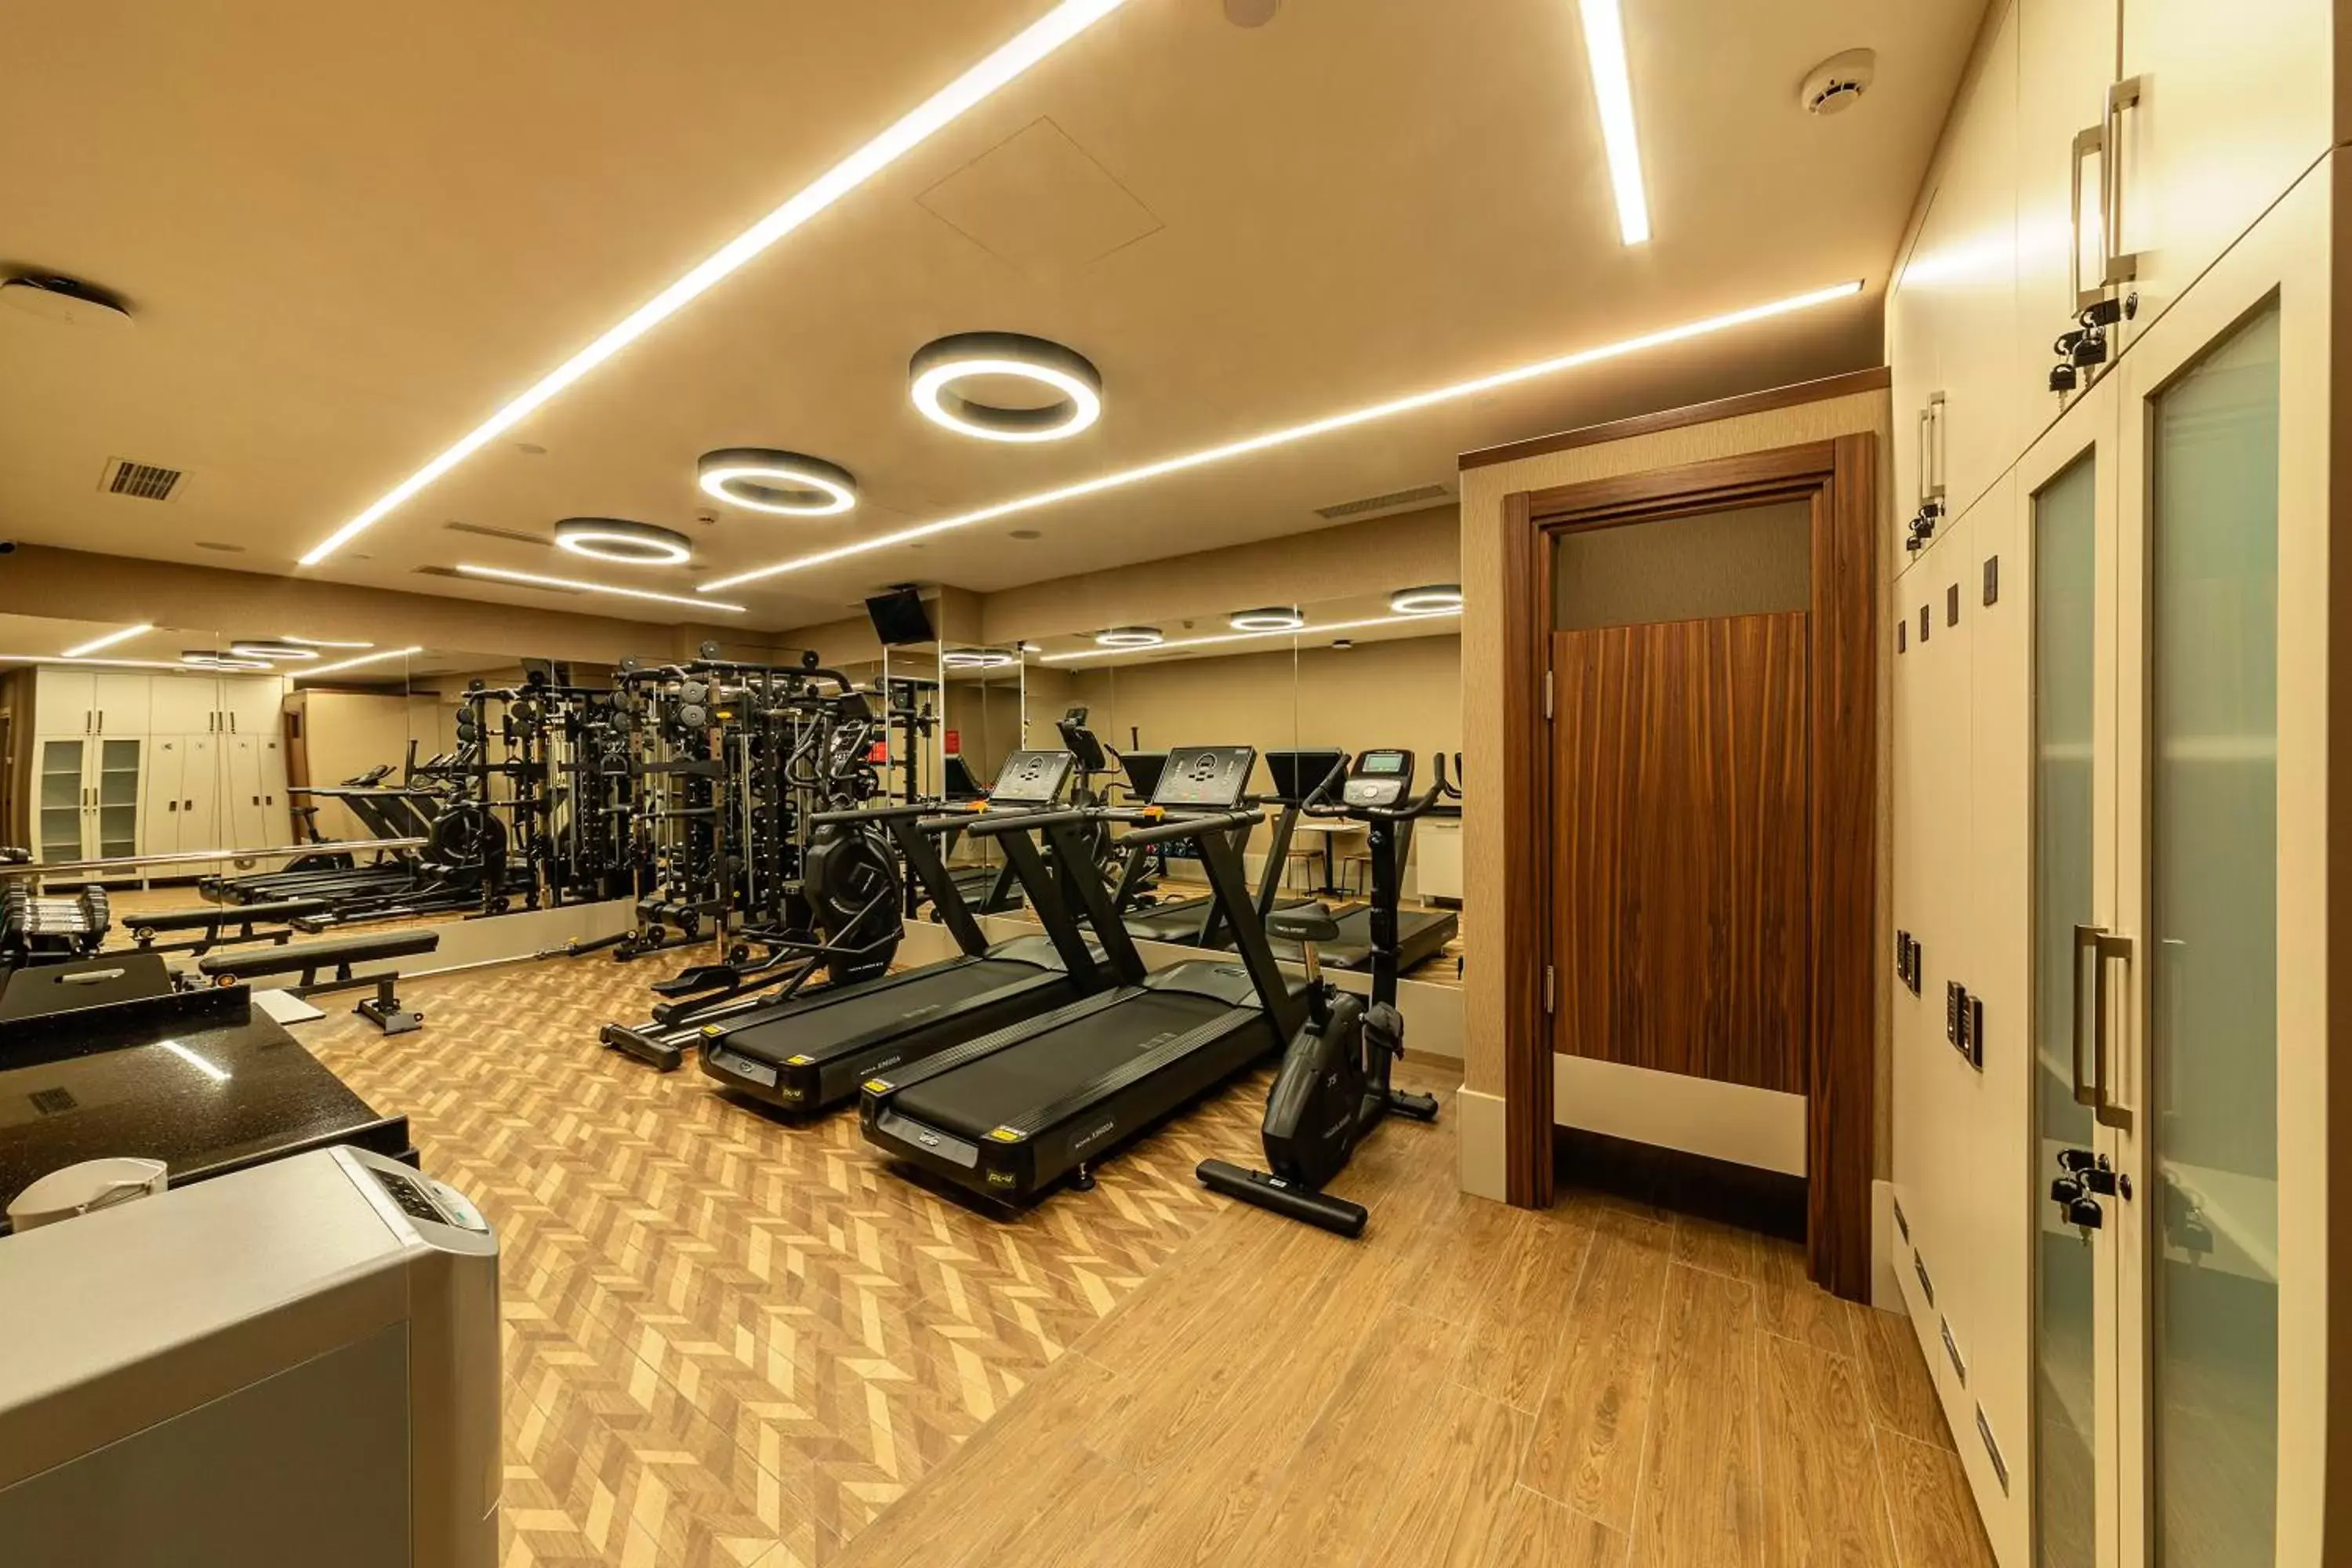 Fitness centre/facilities, Fitness Center/Facilities in Mukarnas Pera Hotel